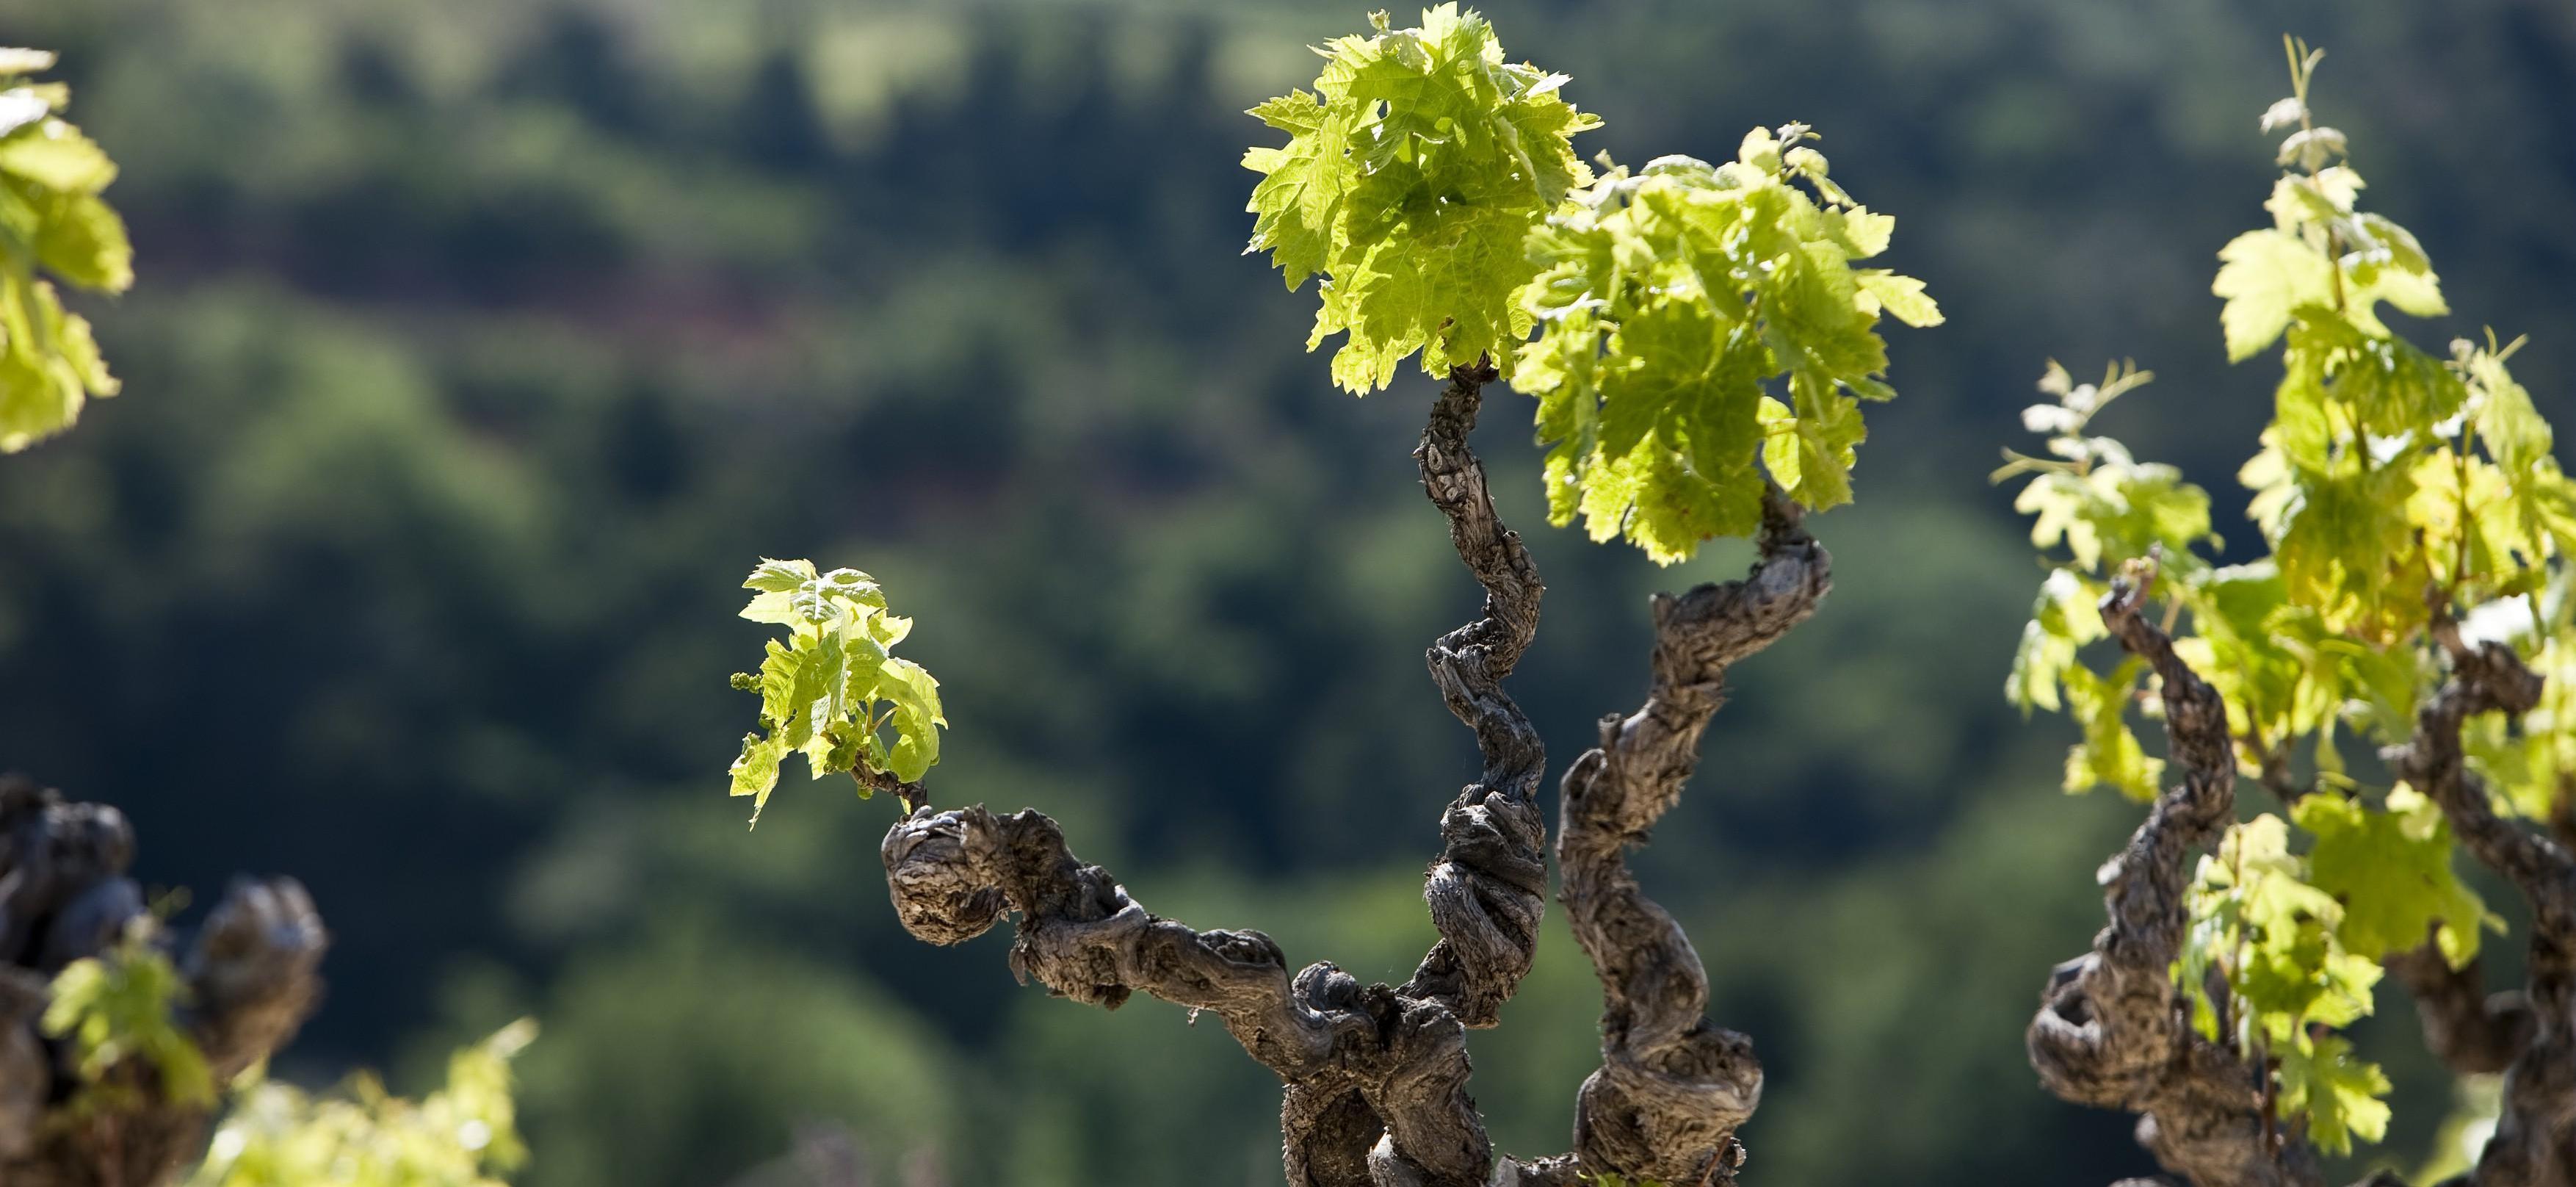 Impact économique de l'arrêt des herbicides en viticulture